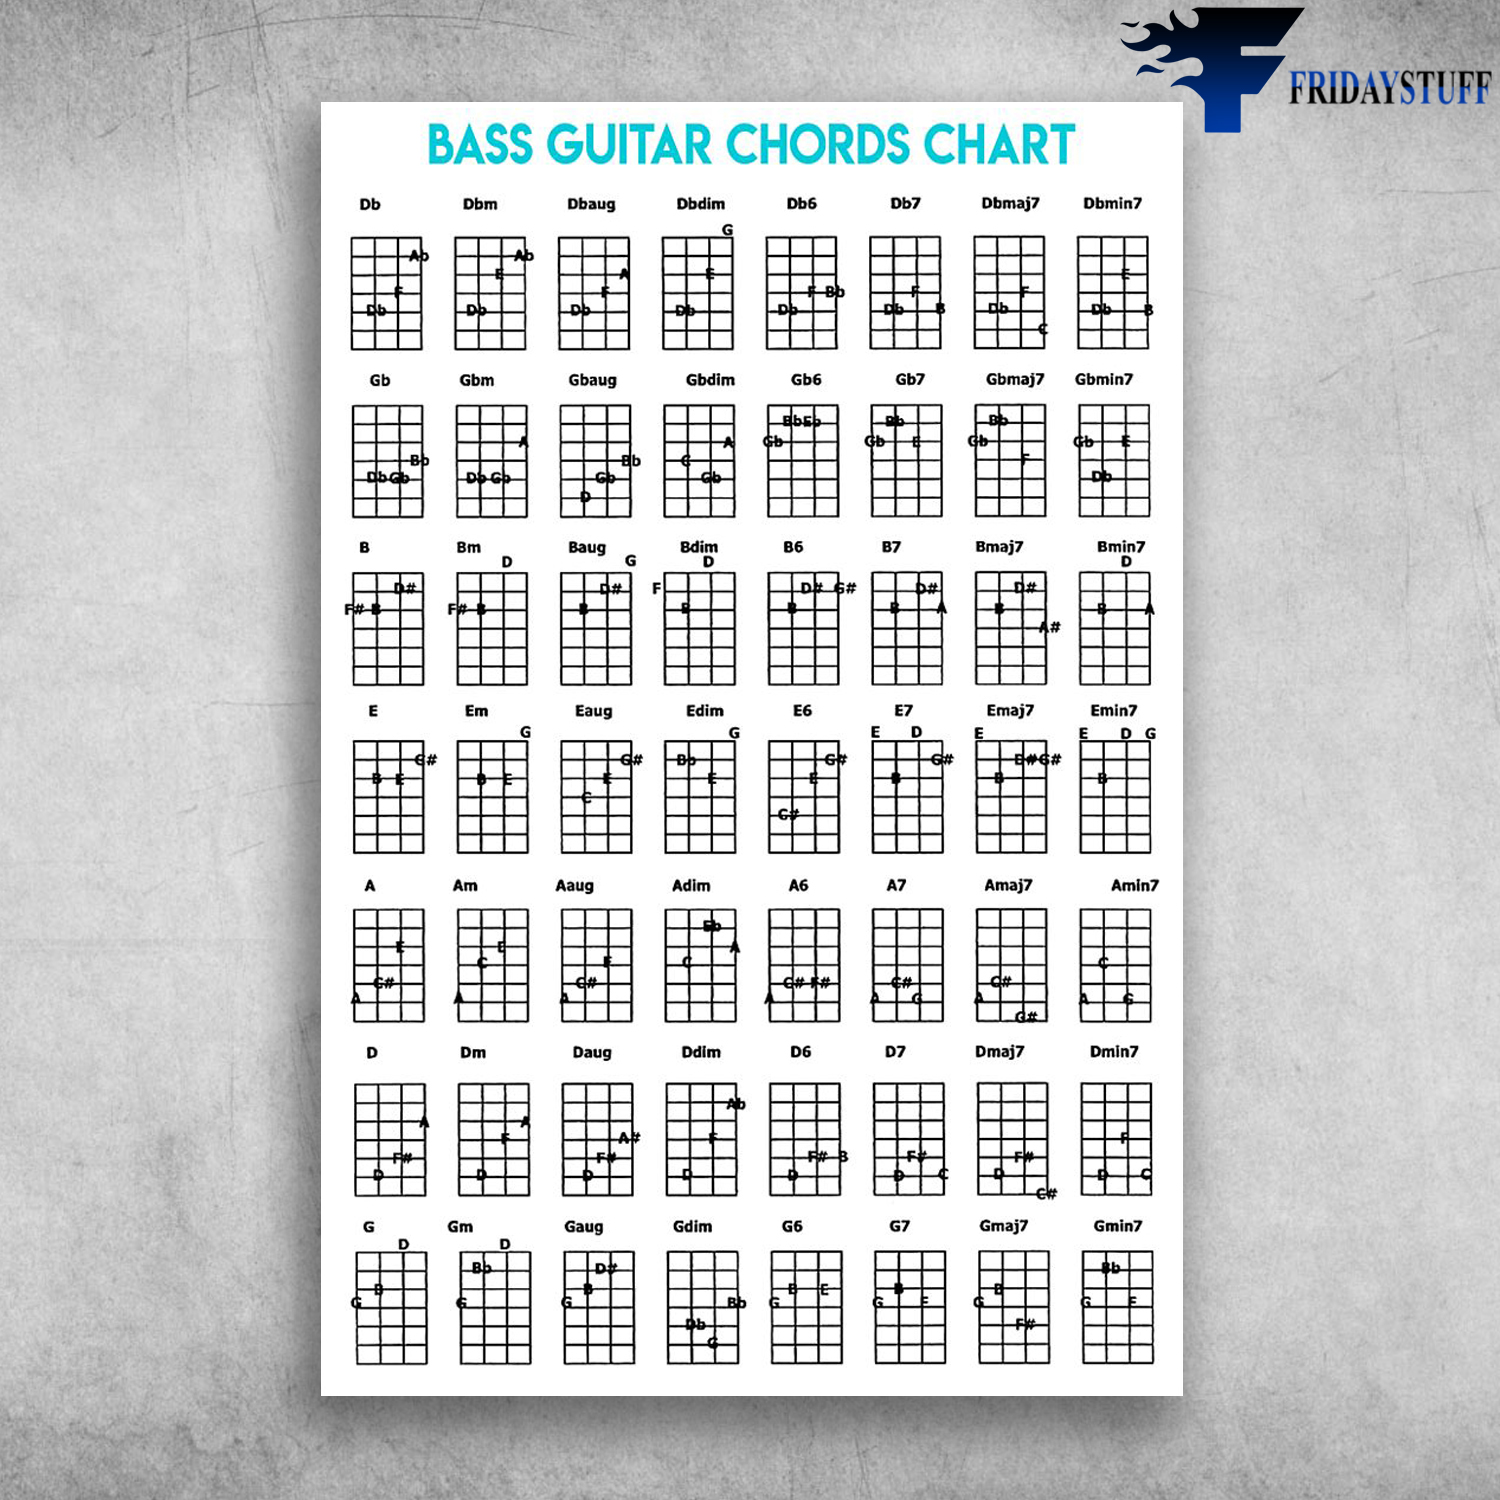 Bass Guitar Chords Chart Guitar Musical Instrument